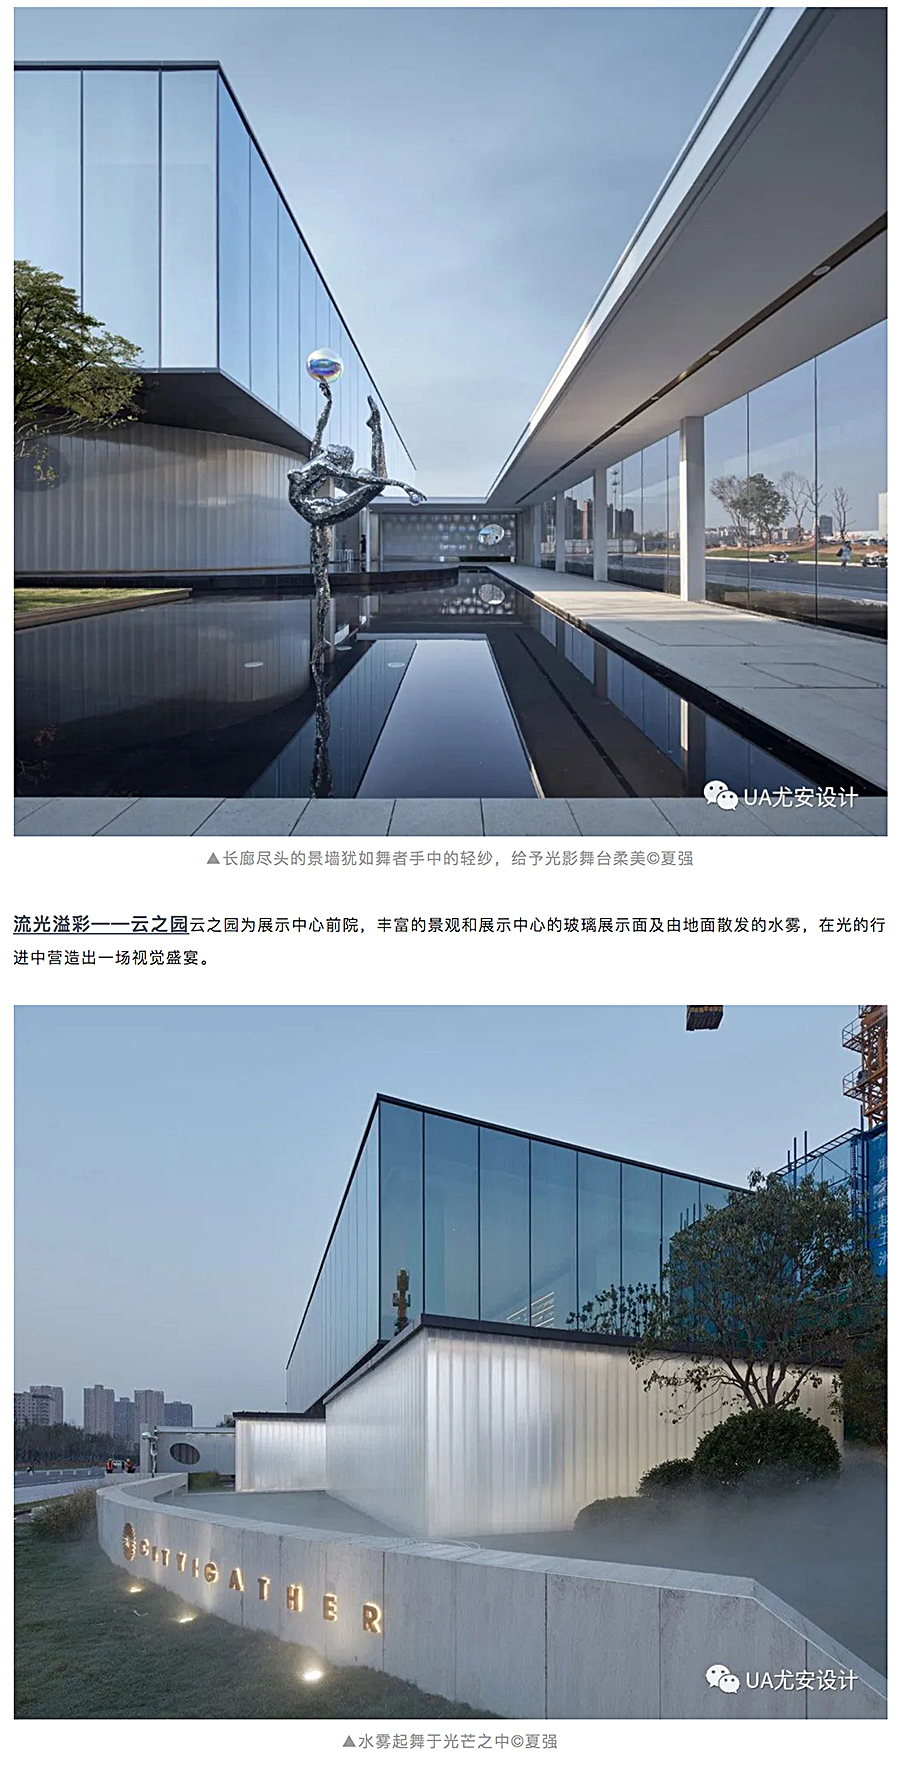 空间的艺术性塑造-_-郑州保利天汇展示中心_0006_图层-7.jpg